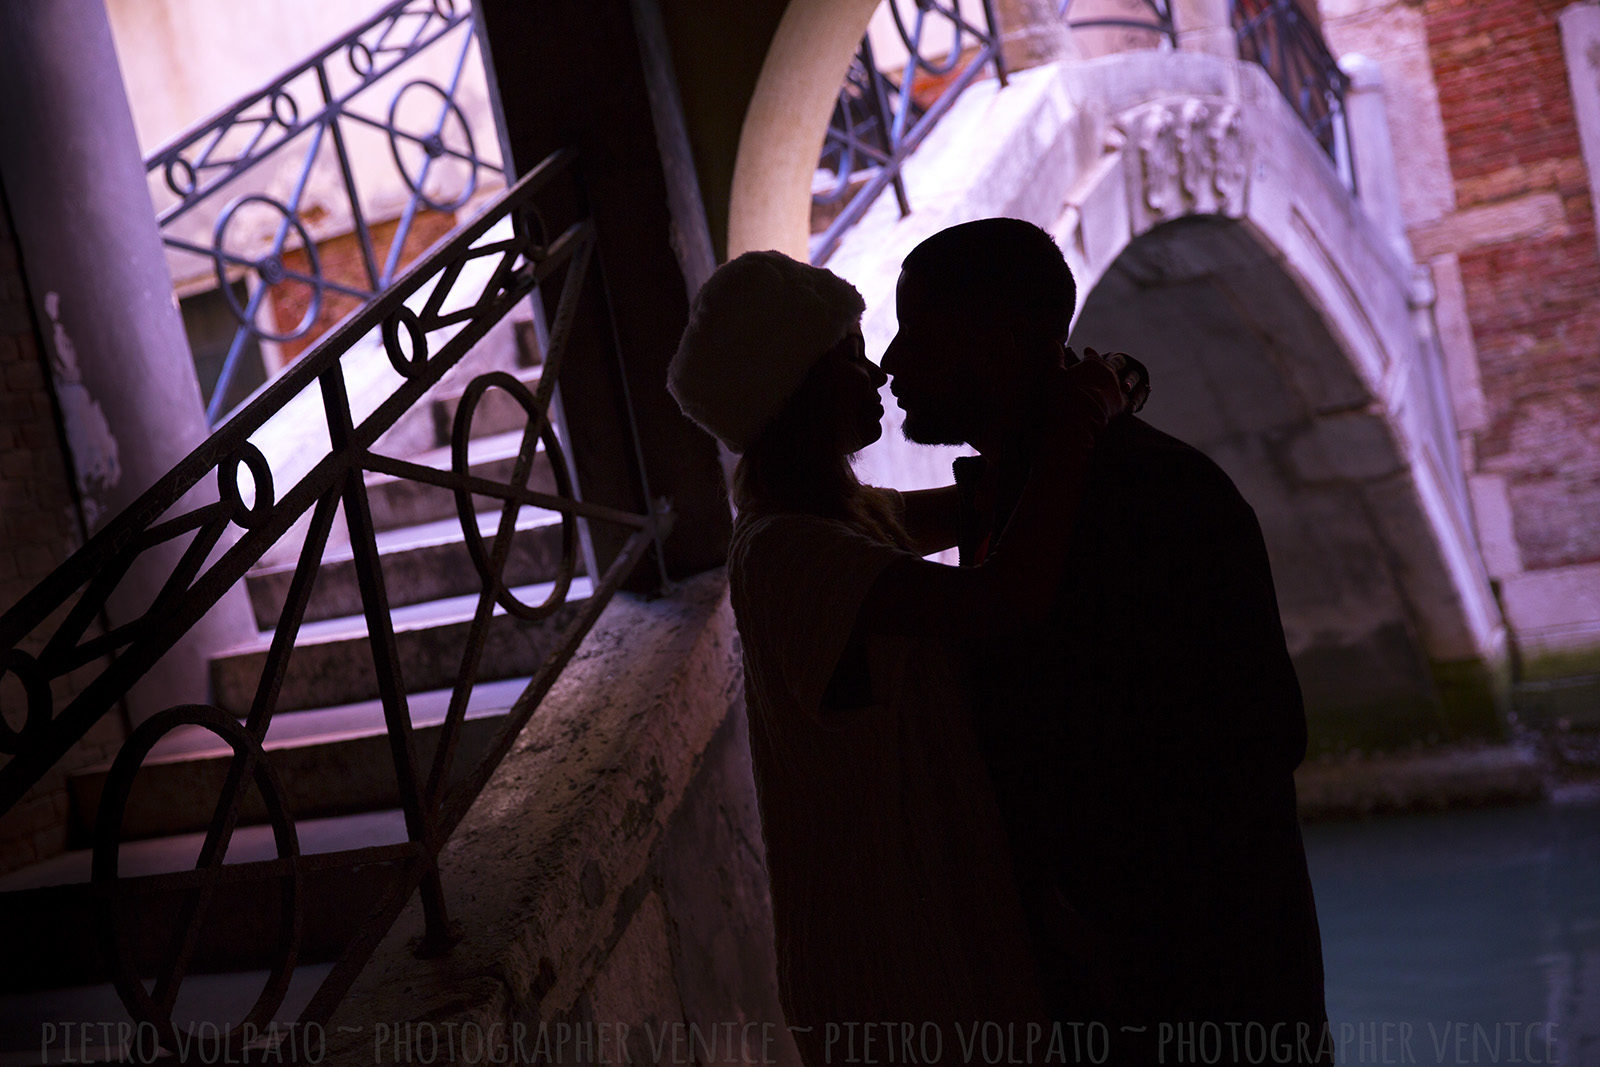 Ingaggiatemi come fotografo per la vostra vacanza romantica a Venezia ~ Foto di una indimenticabile passeggiata e giro in gondola